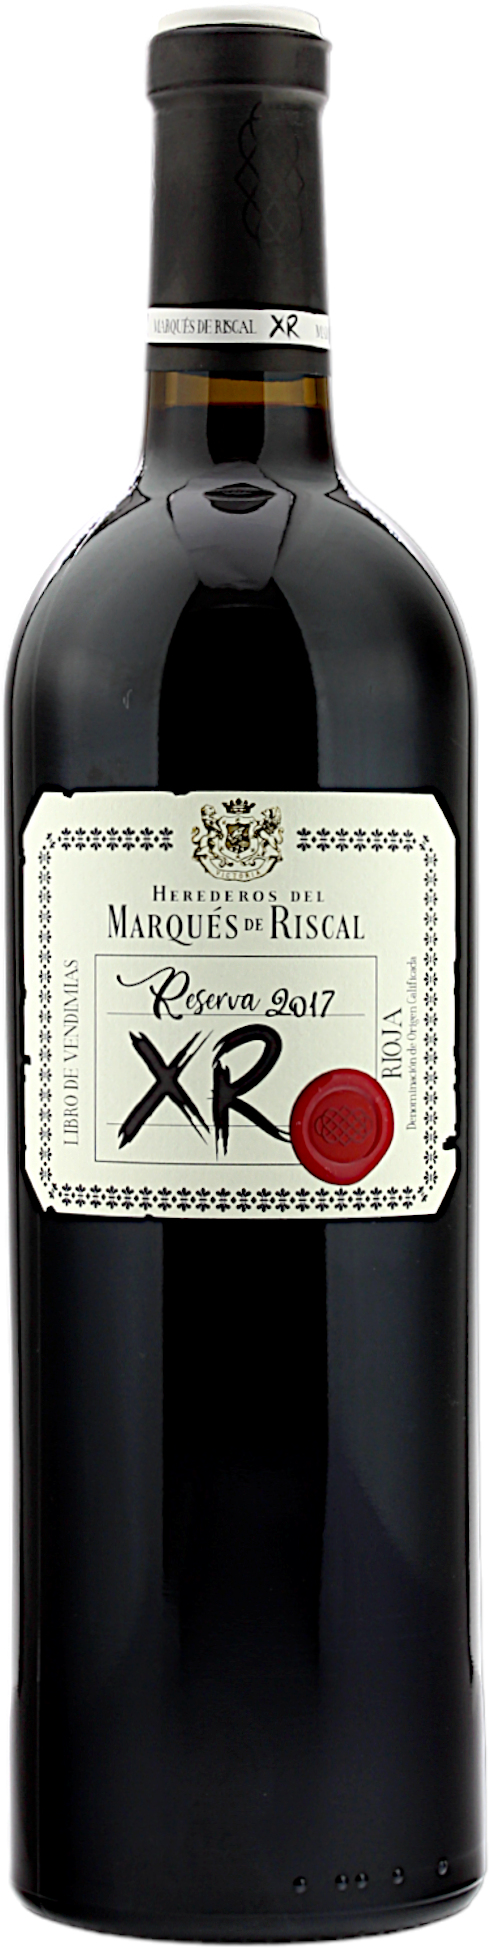 Marqués de Riscal La DOC 2017 XR Rioja Reserva